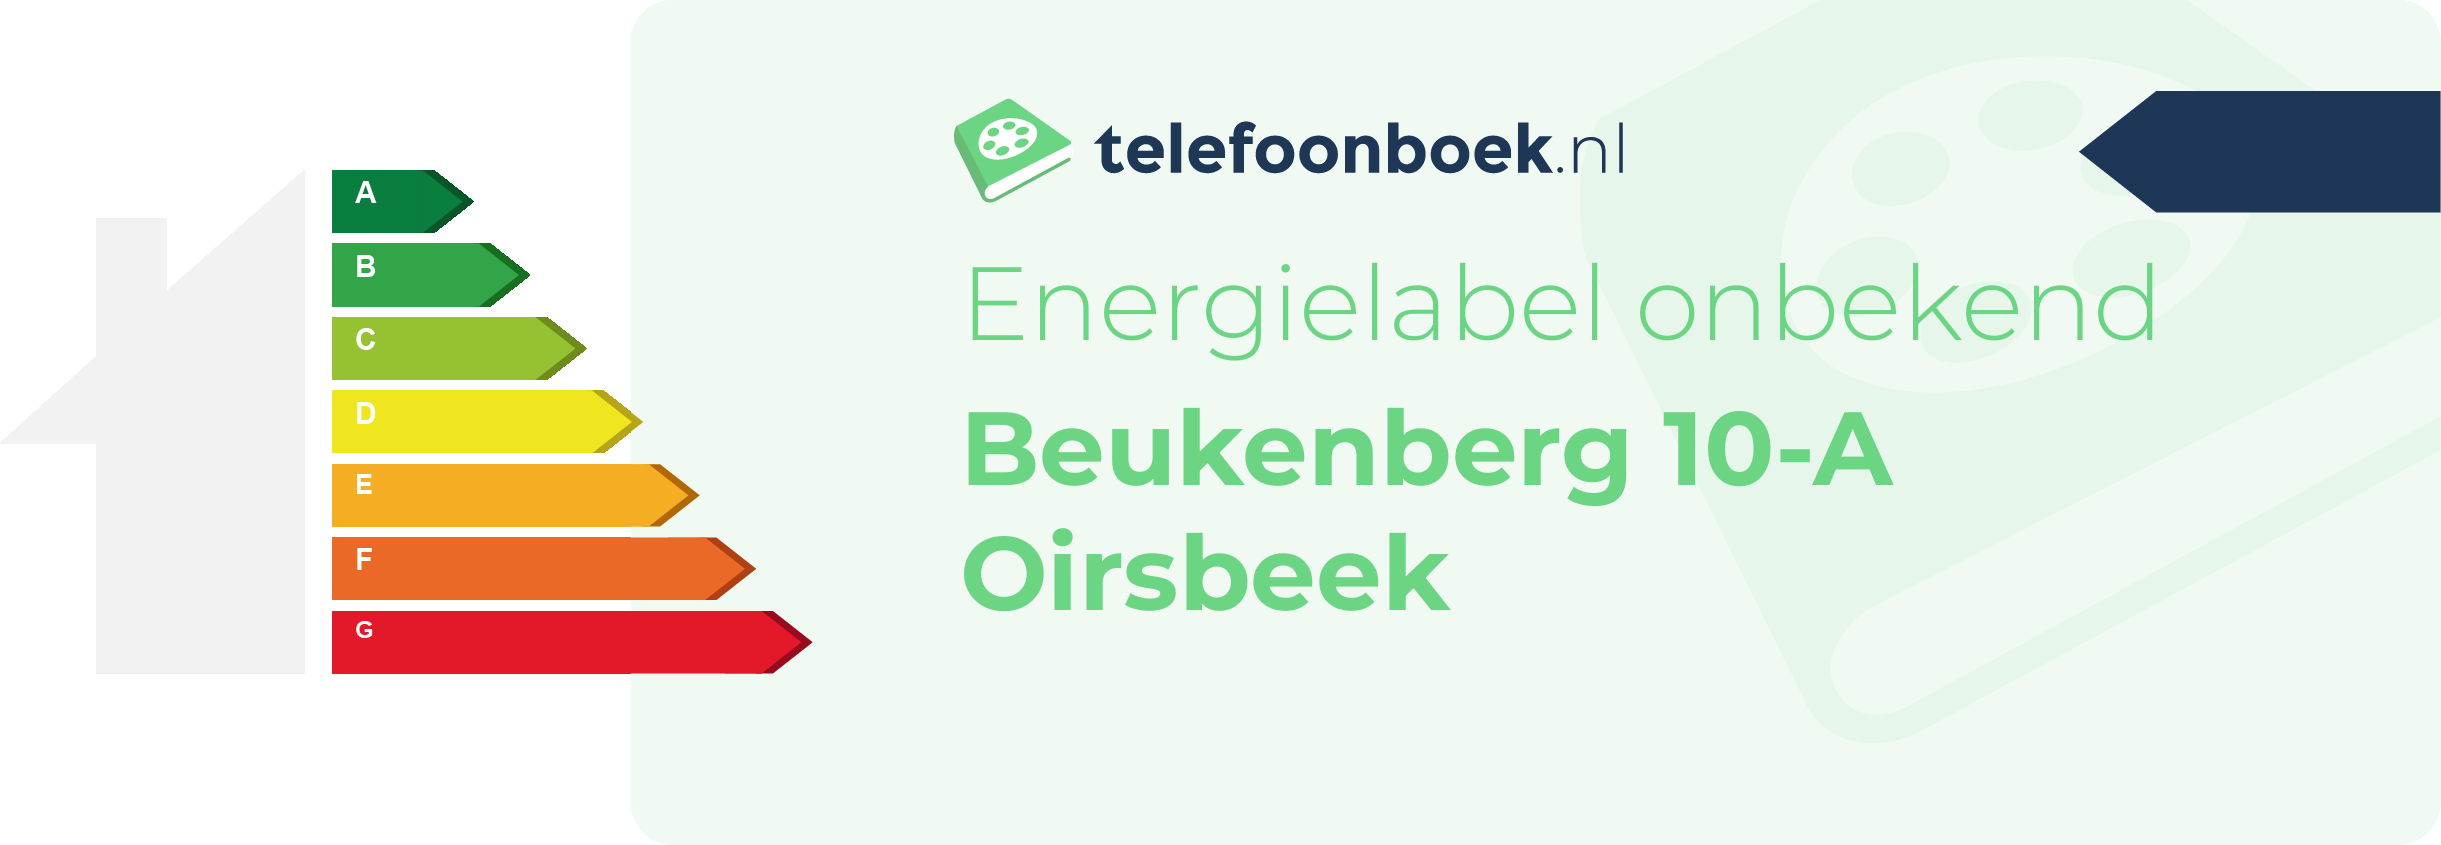 Energielabel Beukenberg 10-A Oirsbeek